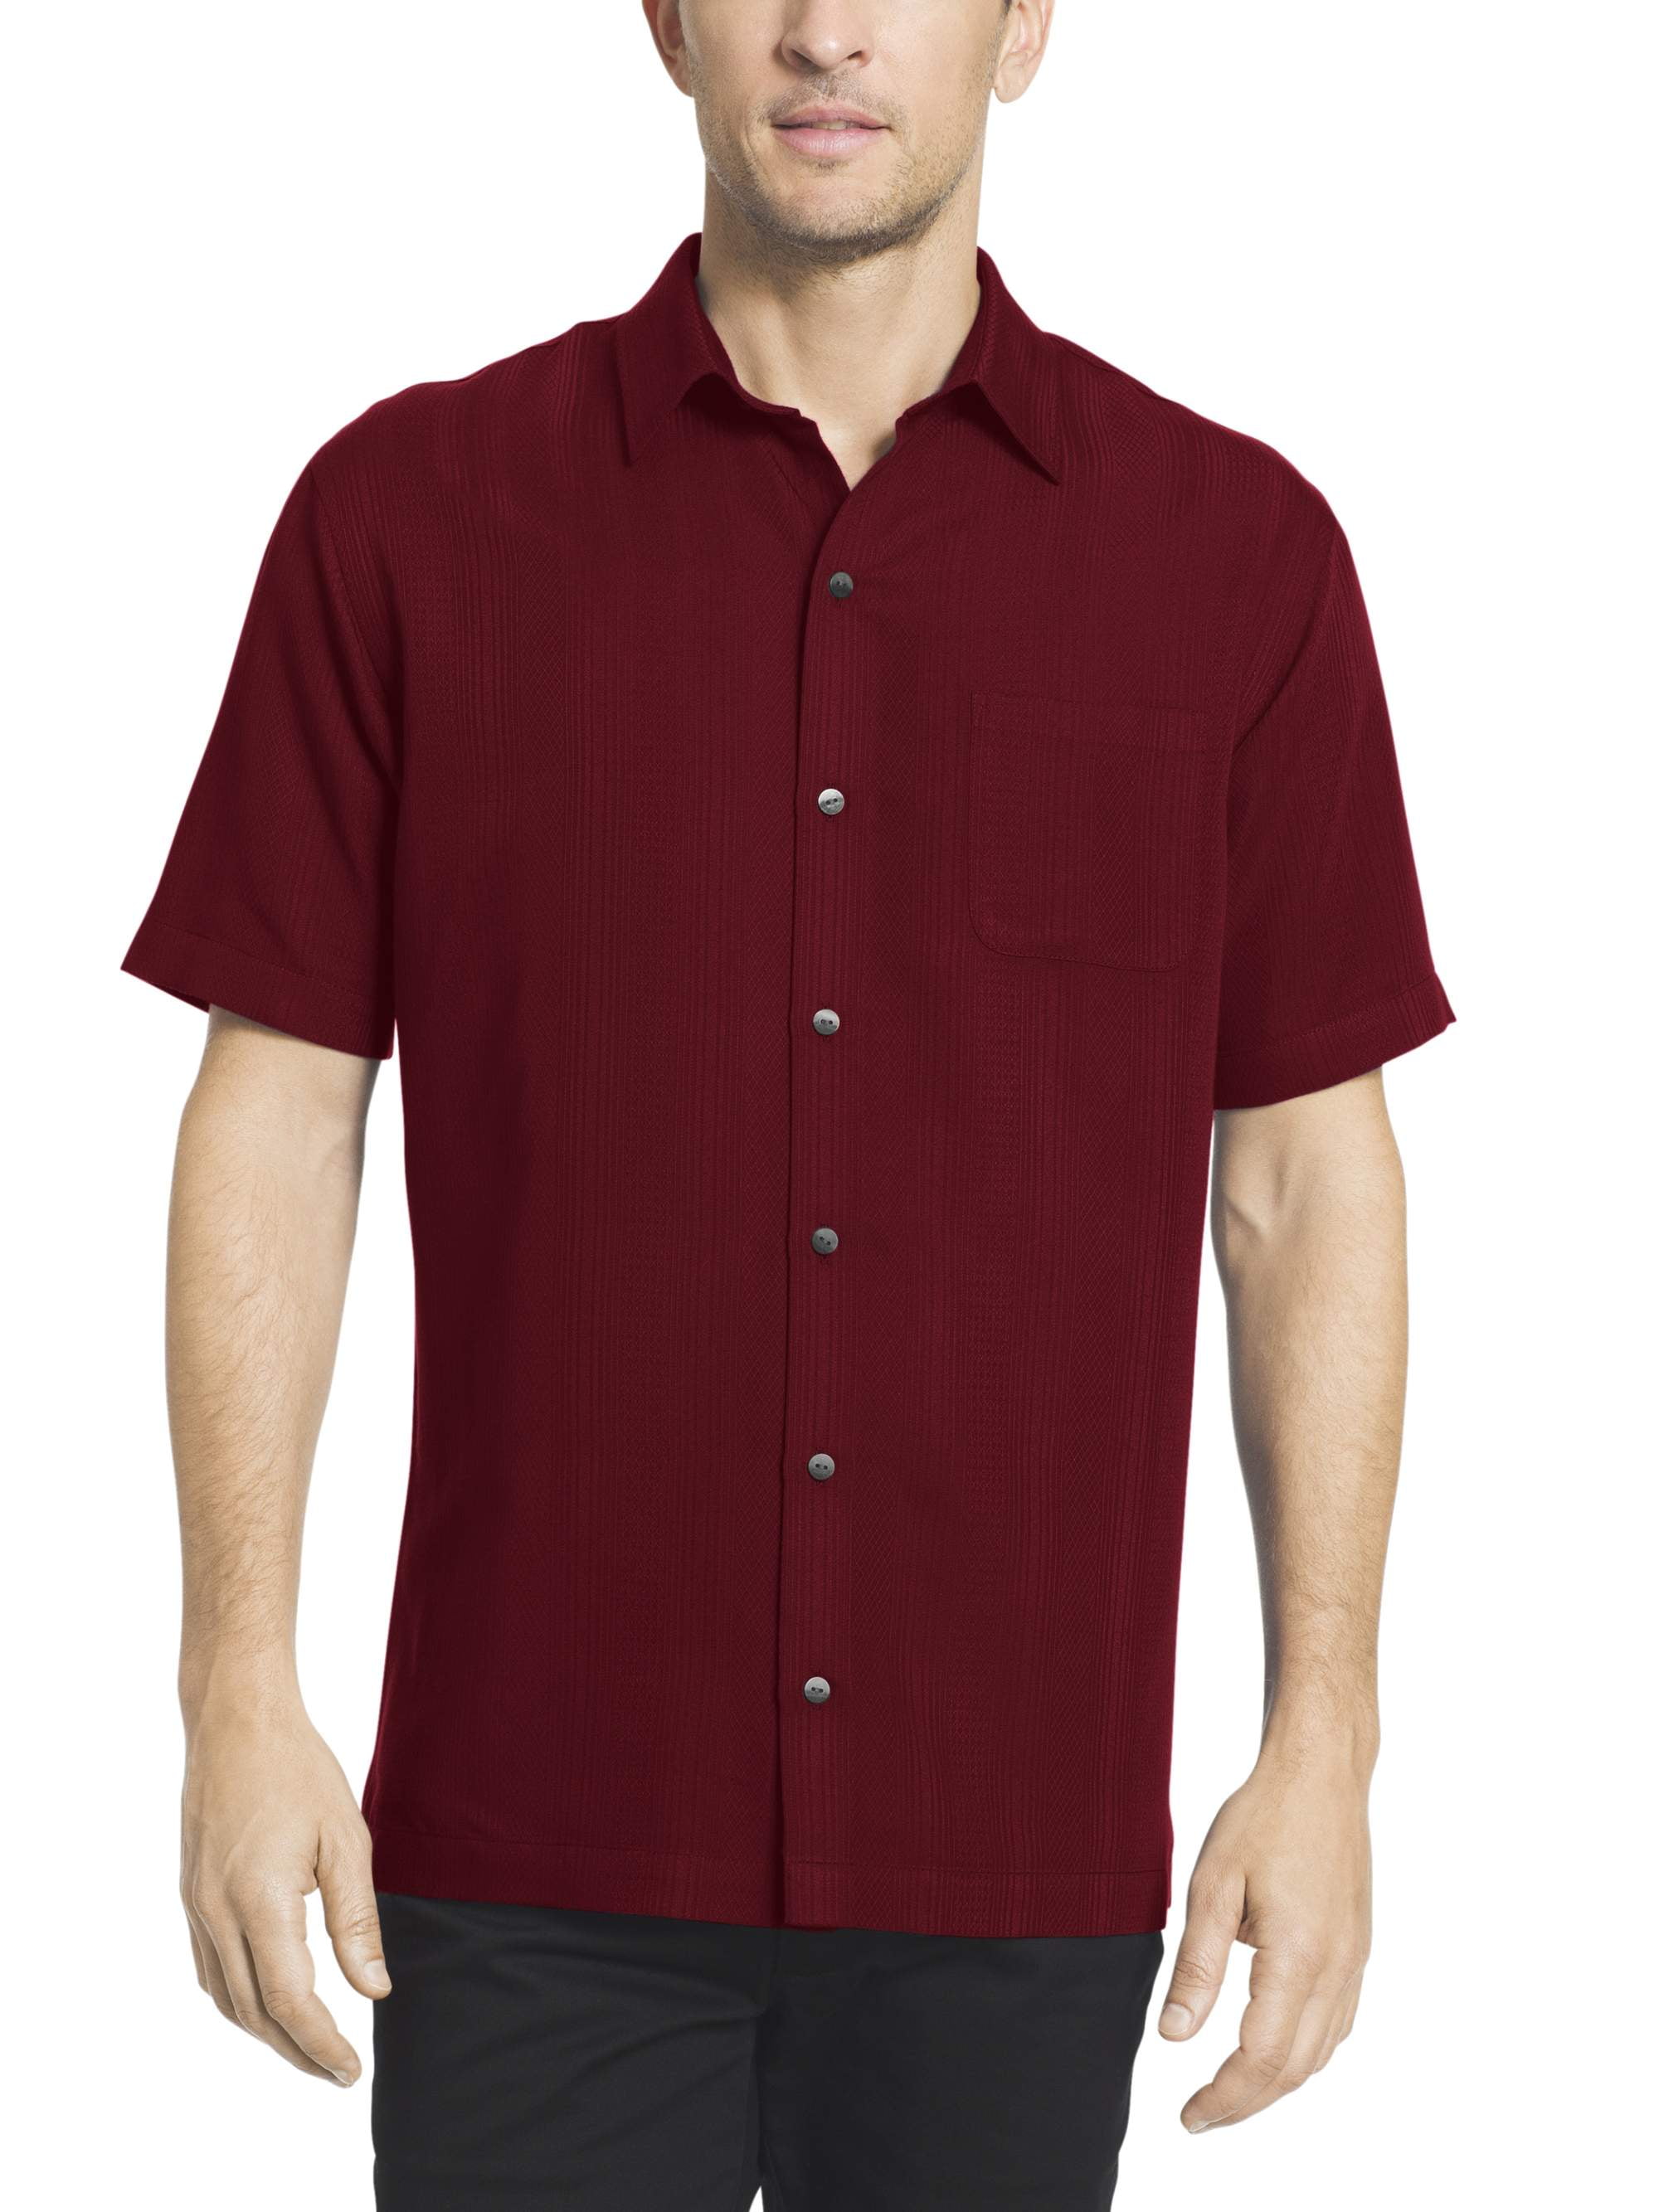 Van Heusen Mens Striped Short Sleeve Shirt - Walmart.com